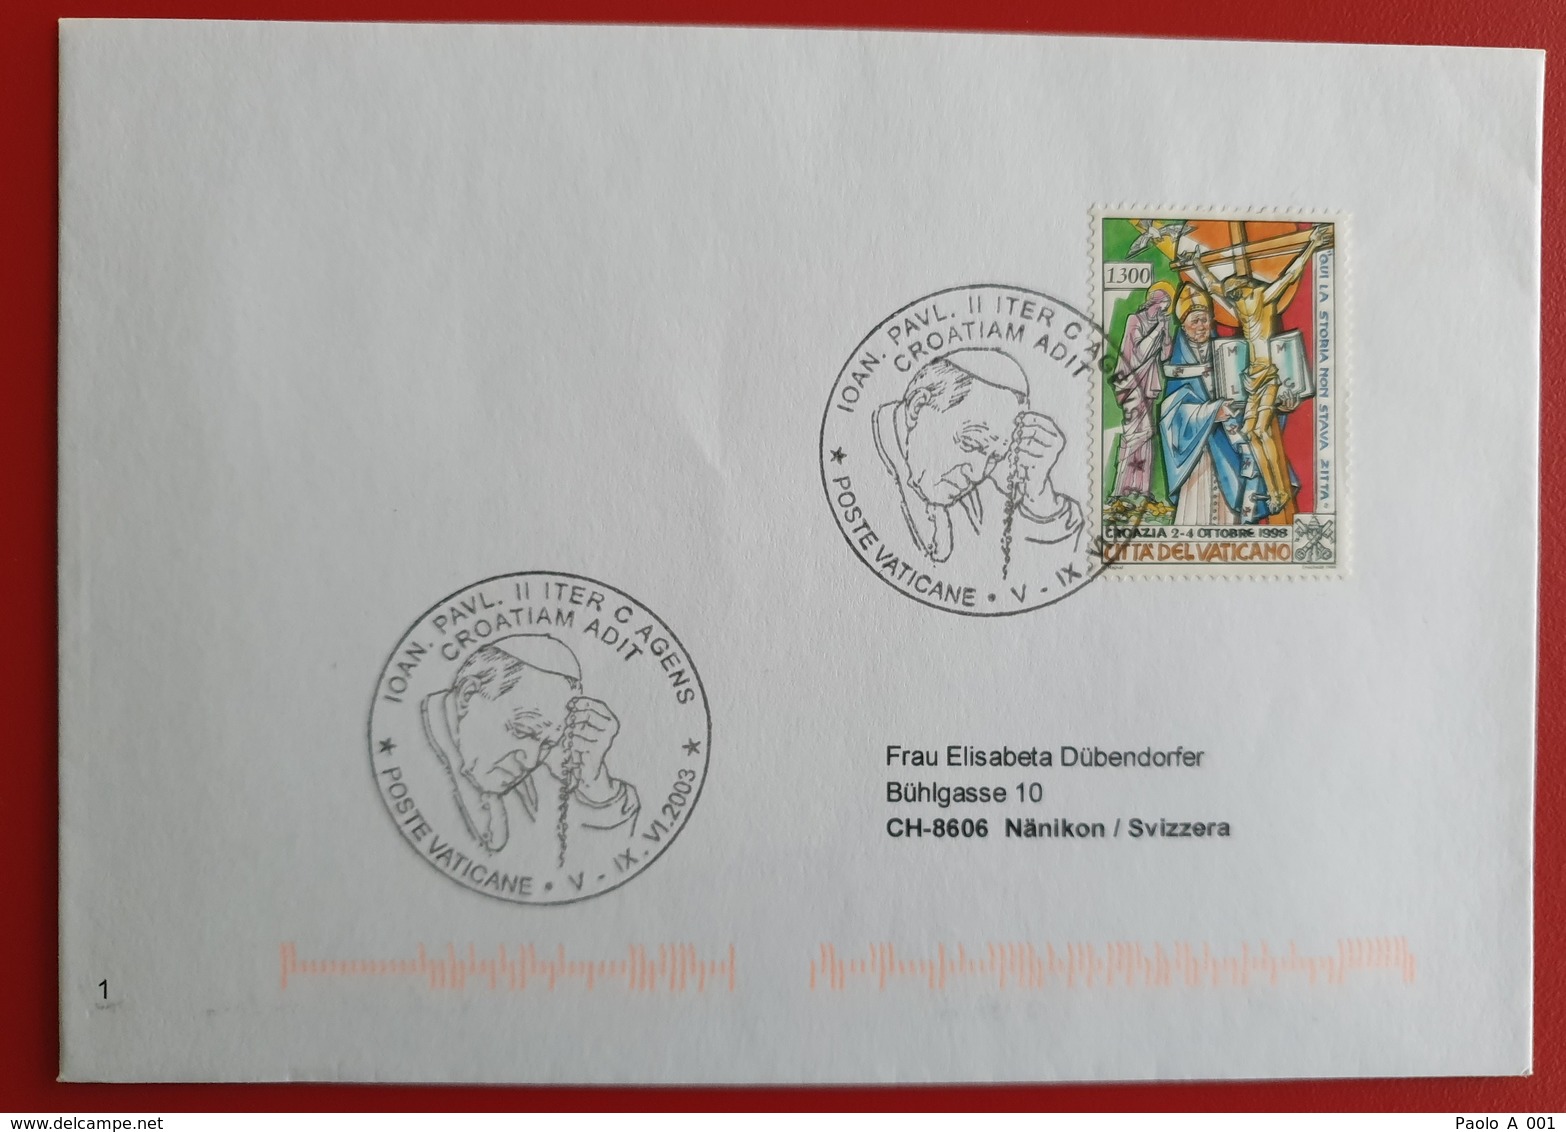 VATICANO VATIKAN VATICAN HRVATSKA CROATIA IOAN PAUL II Visit Croatia 2003 - Lettres & Documents